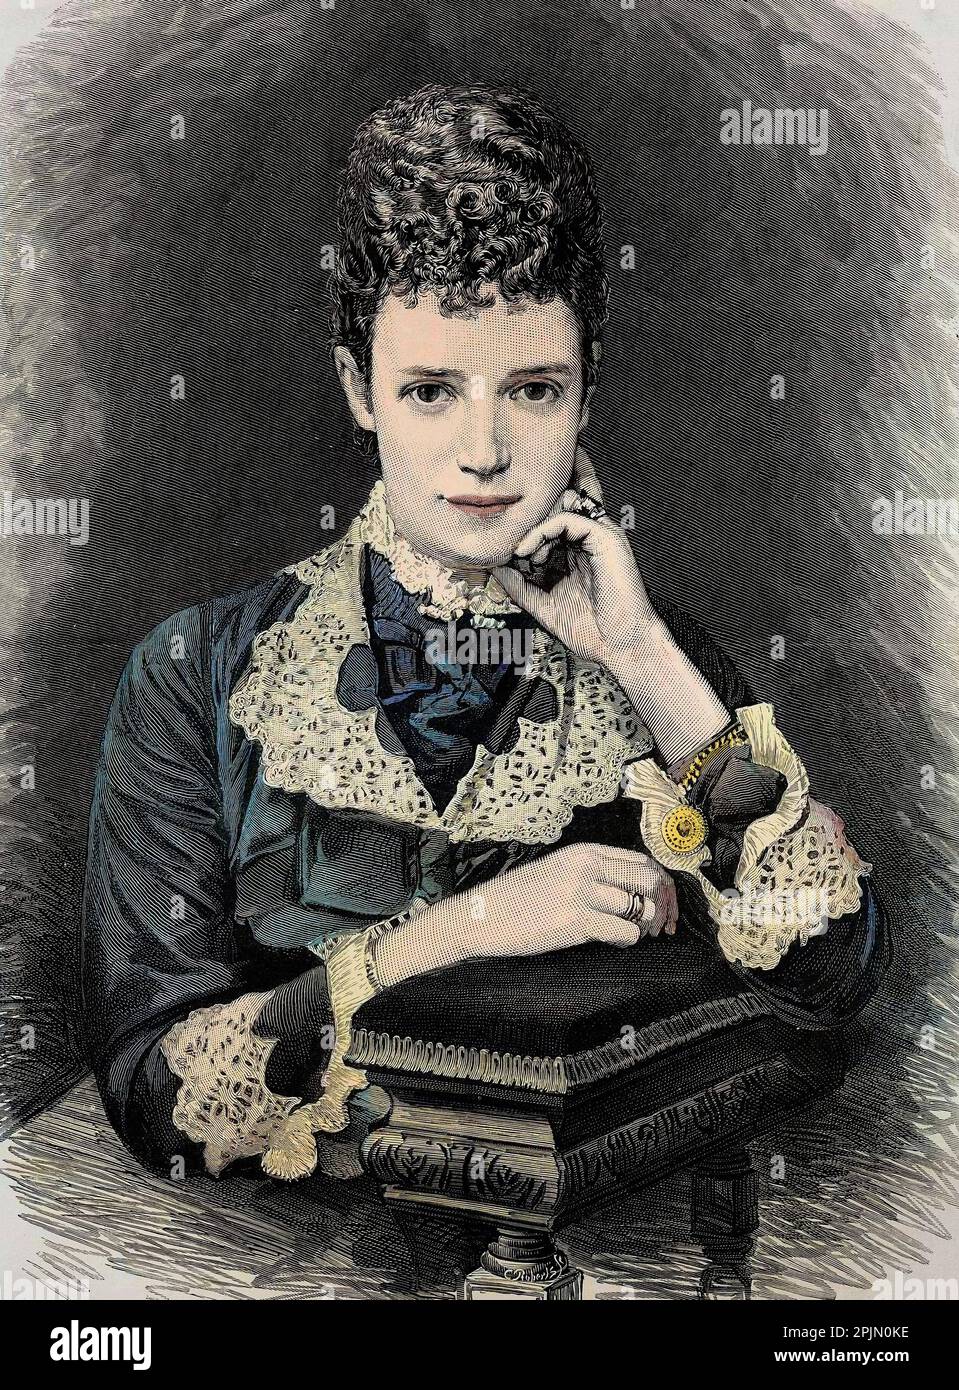 Retrato de Marija Fedorovna, emperatriz de Rusia (1847-1928) - Retrato de la princesa Marie Sophie Dagmar (1847-1928), Impératrice consort de Russie sous le nom de Marie Feodorovna (ou Fiodorovna, ou Fedorovna), Foto de stock